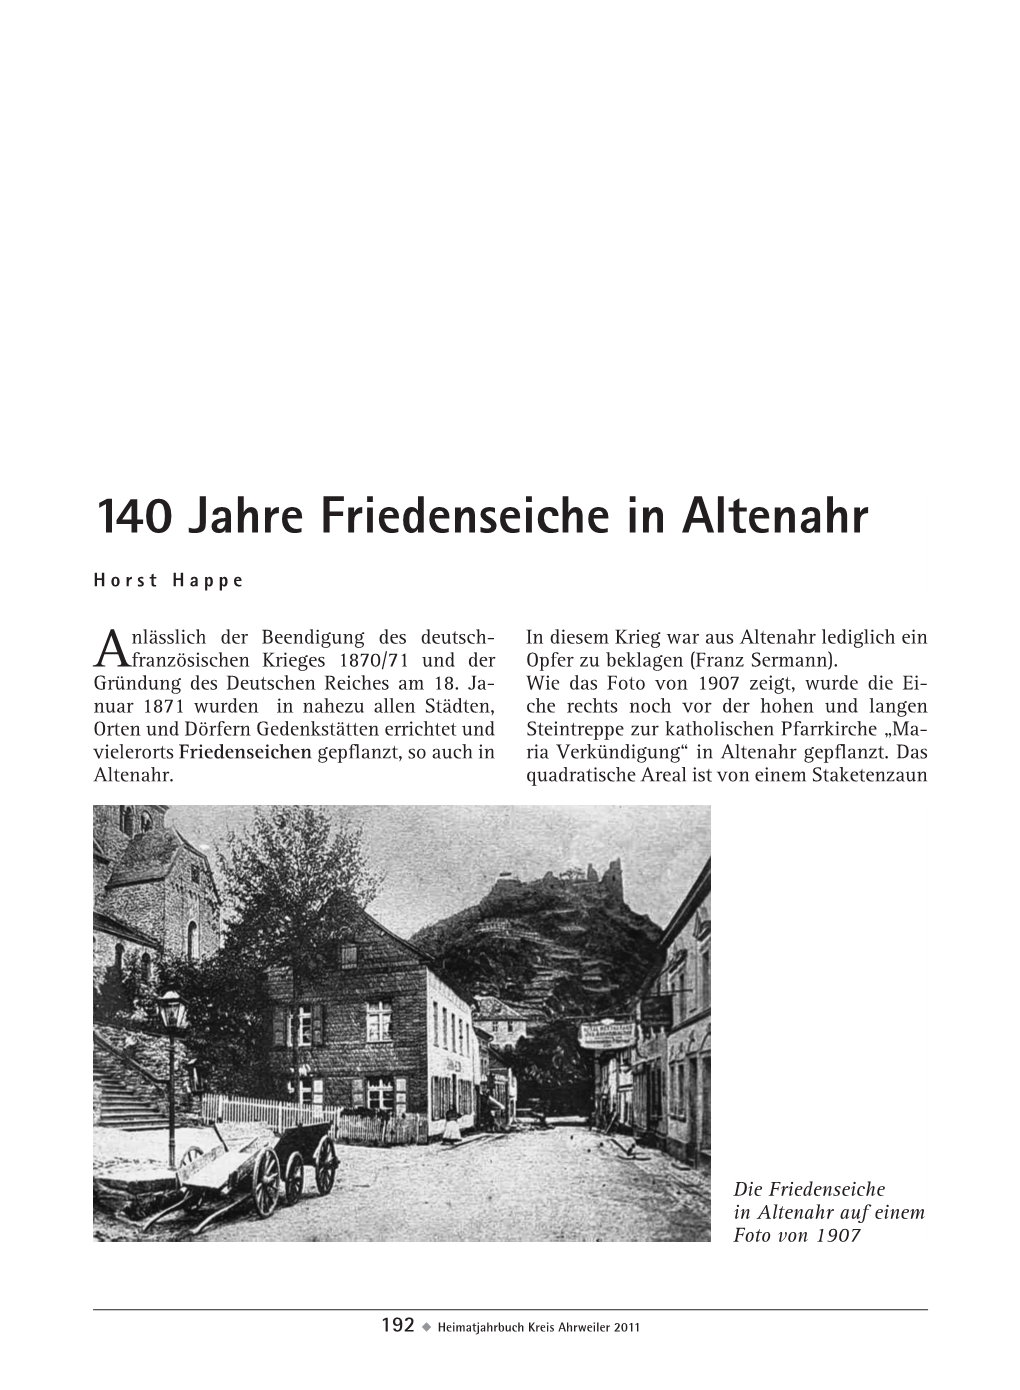 140 Jahre Friedenseiche in Altenahr